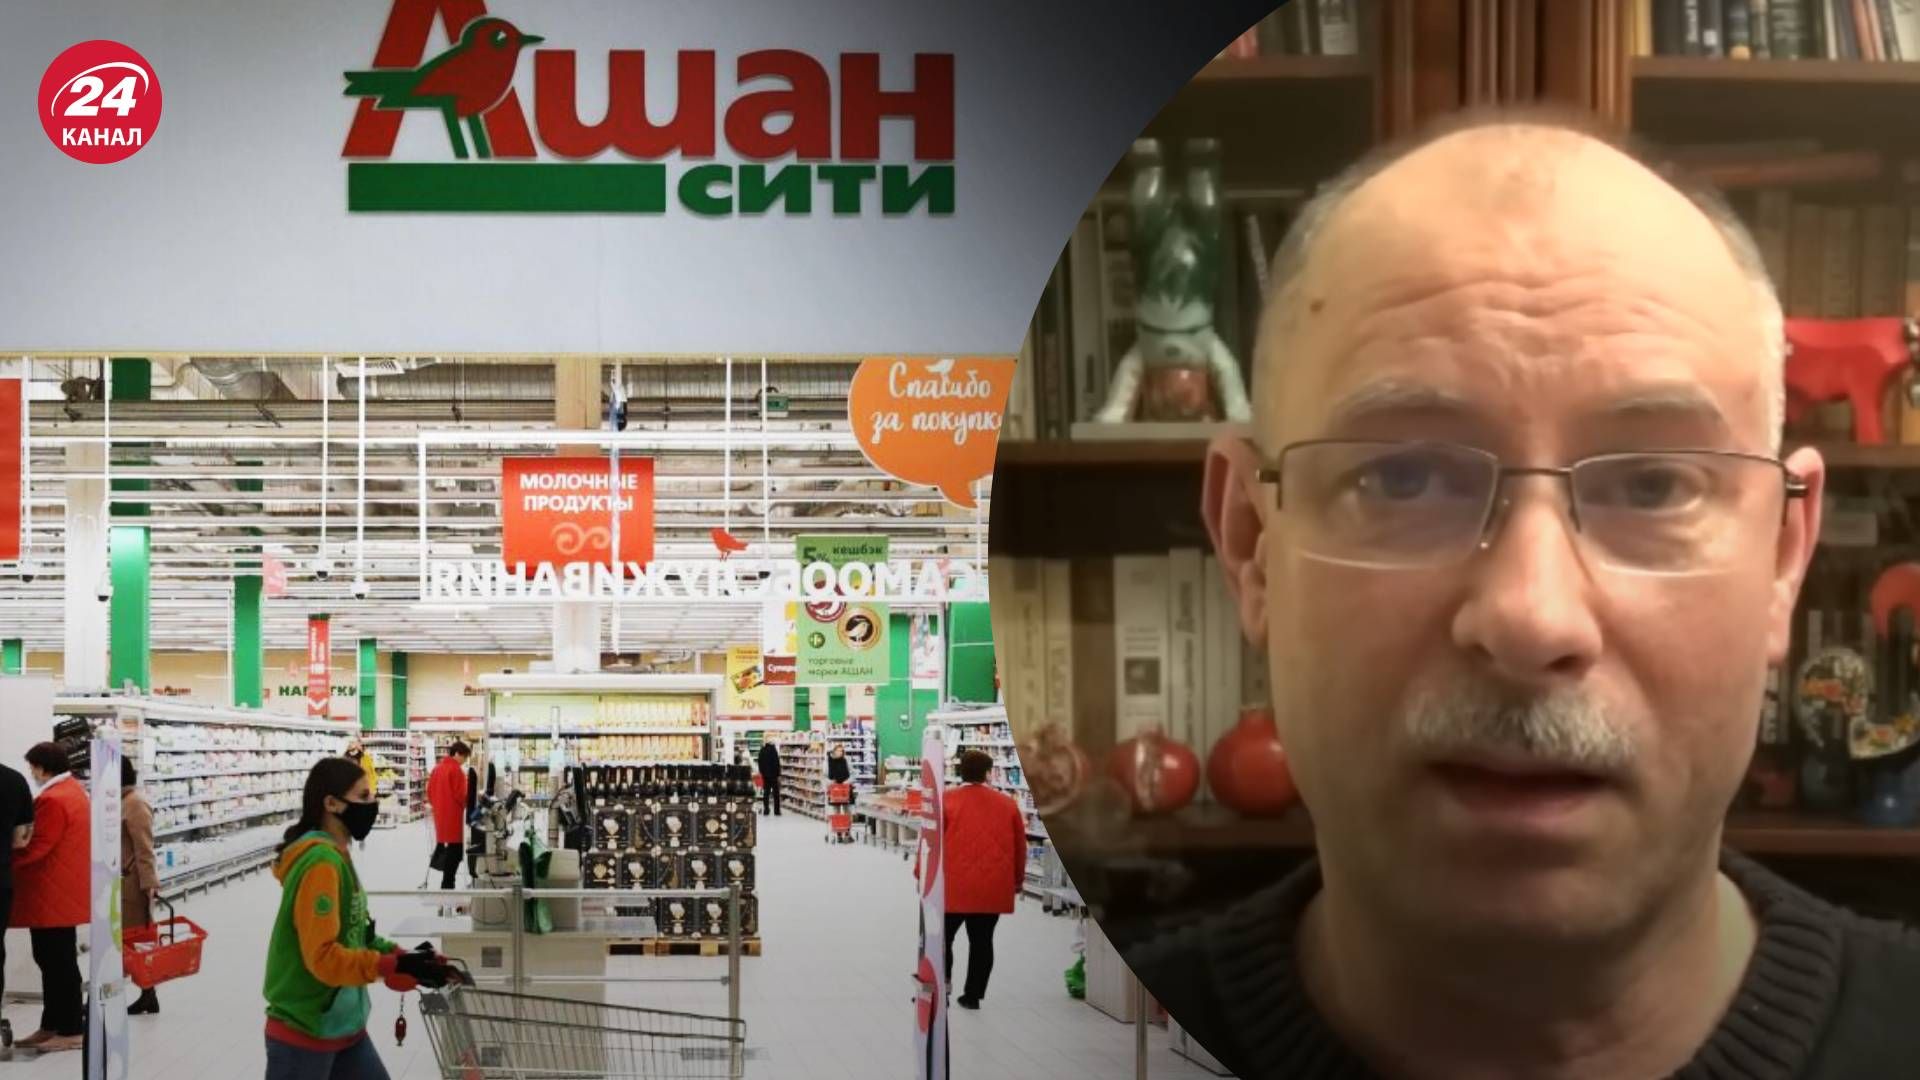 Скандал с Ашаном - Жданов объяснил, почему Ашан стал спонсором войны - 24 Канал